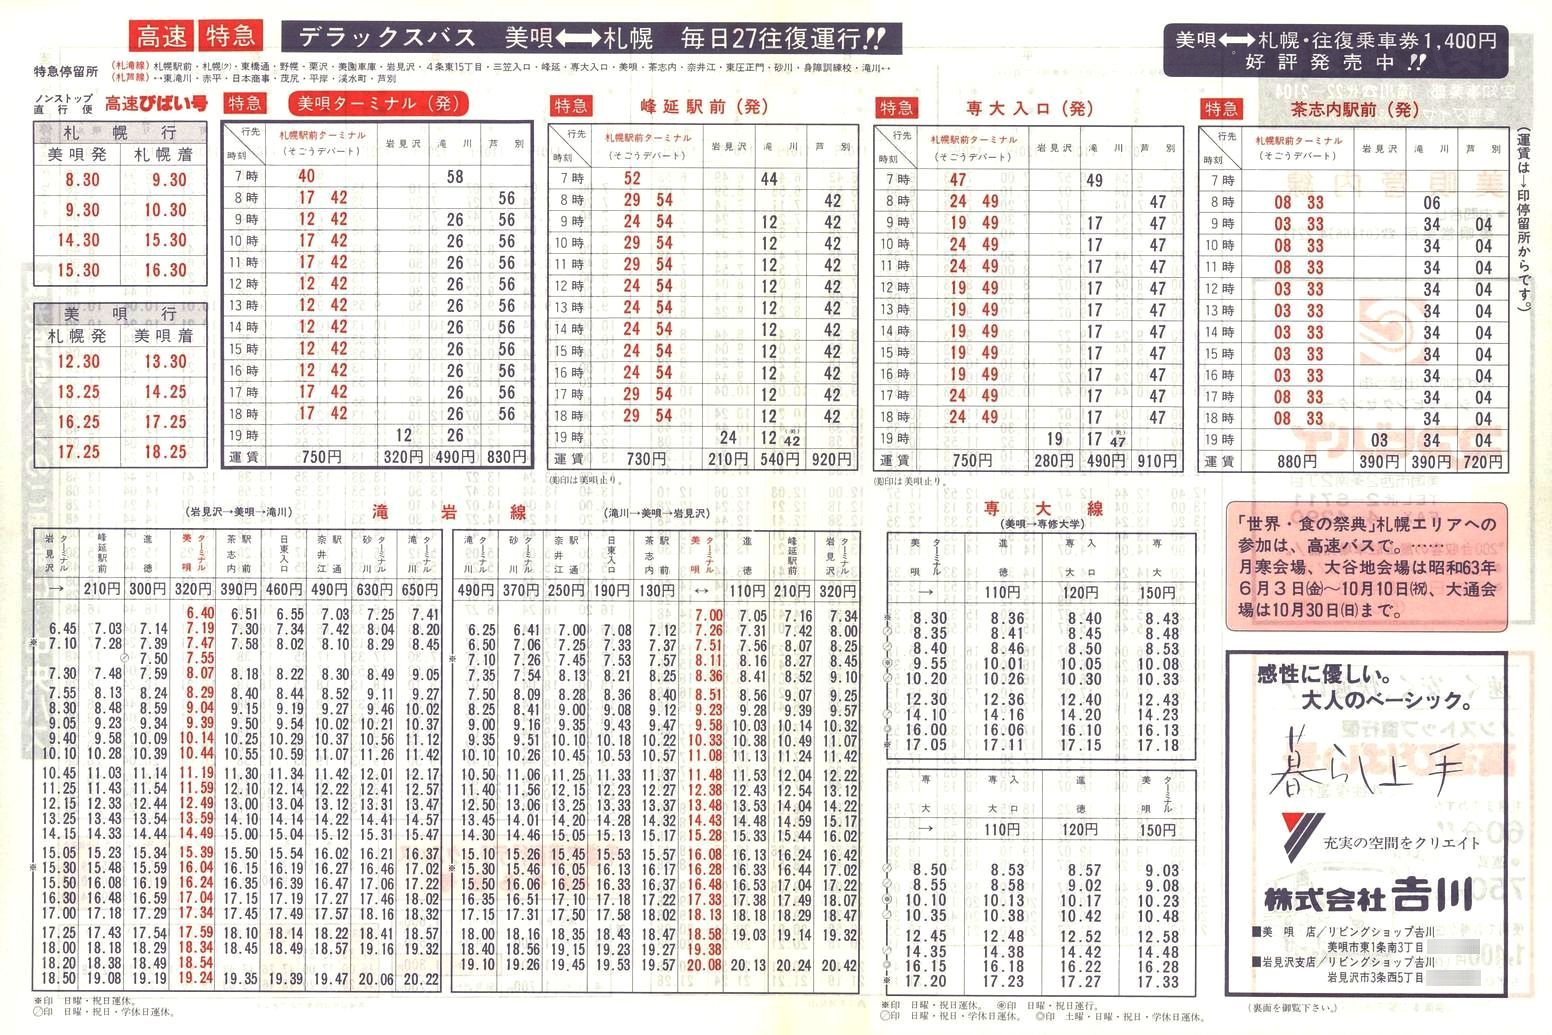 1988-04-10改正_北海道中央バス(空知)_美唄管内線時刻表裏面